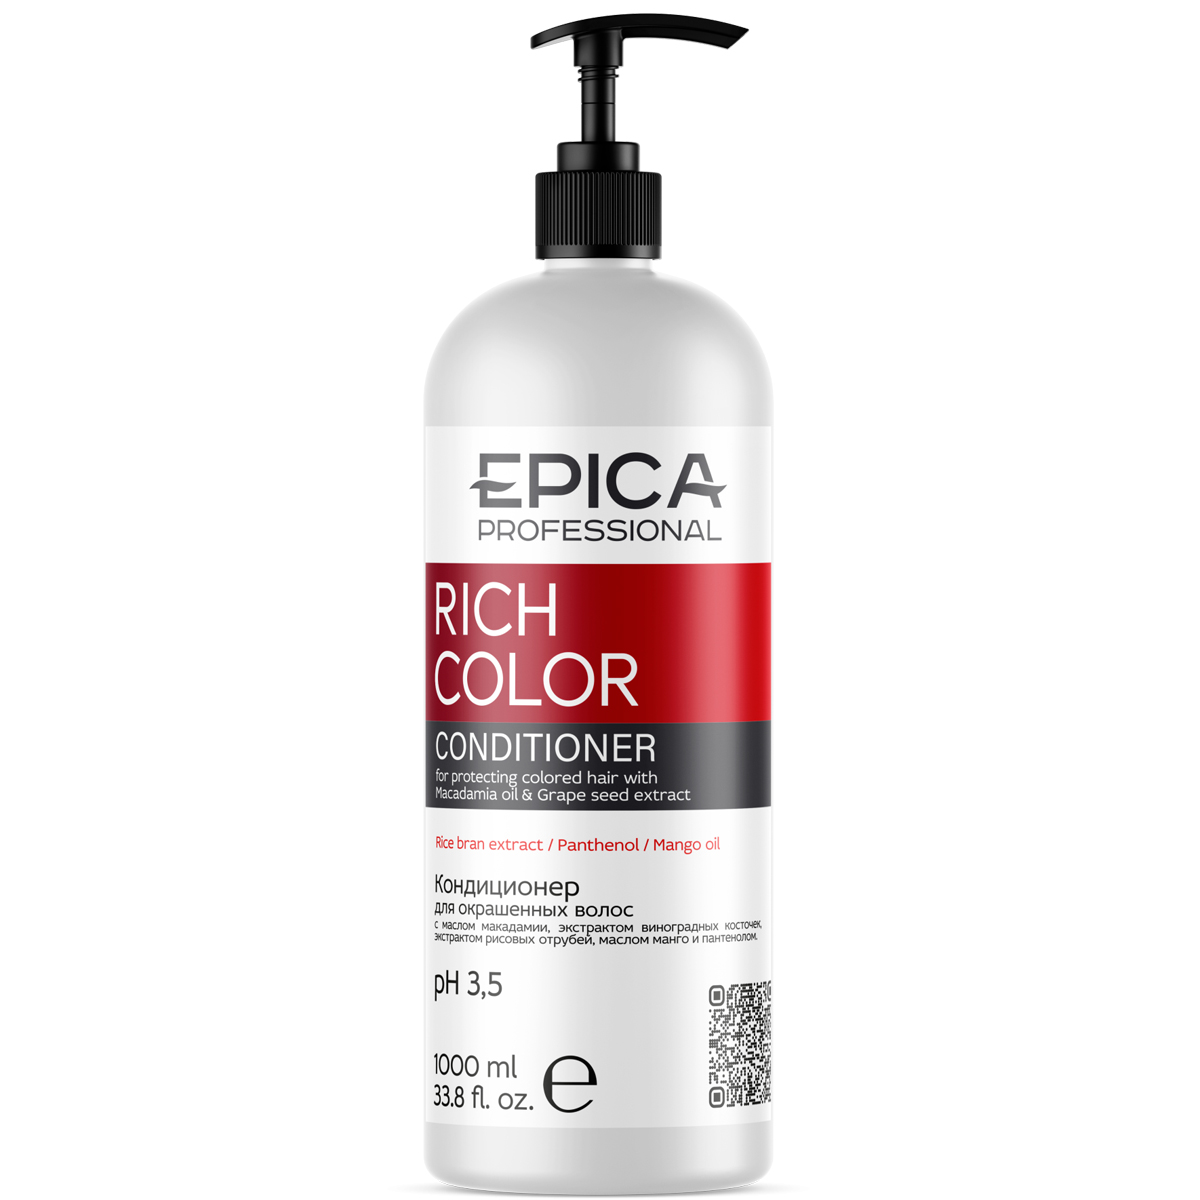 Epica Professional Кондиционер с маслом макадамии и экстрактом виноградных косточек для окрашенных волос, 1000 мл (Epica Professional, Rich Color)